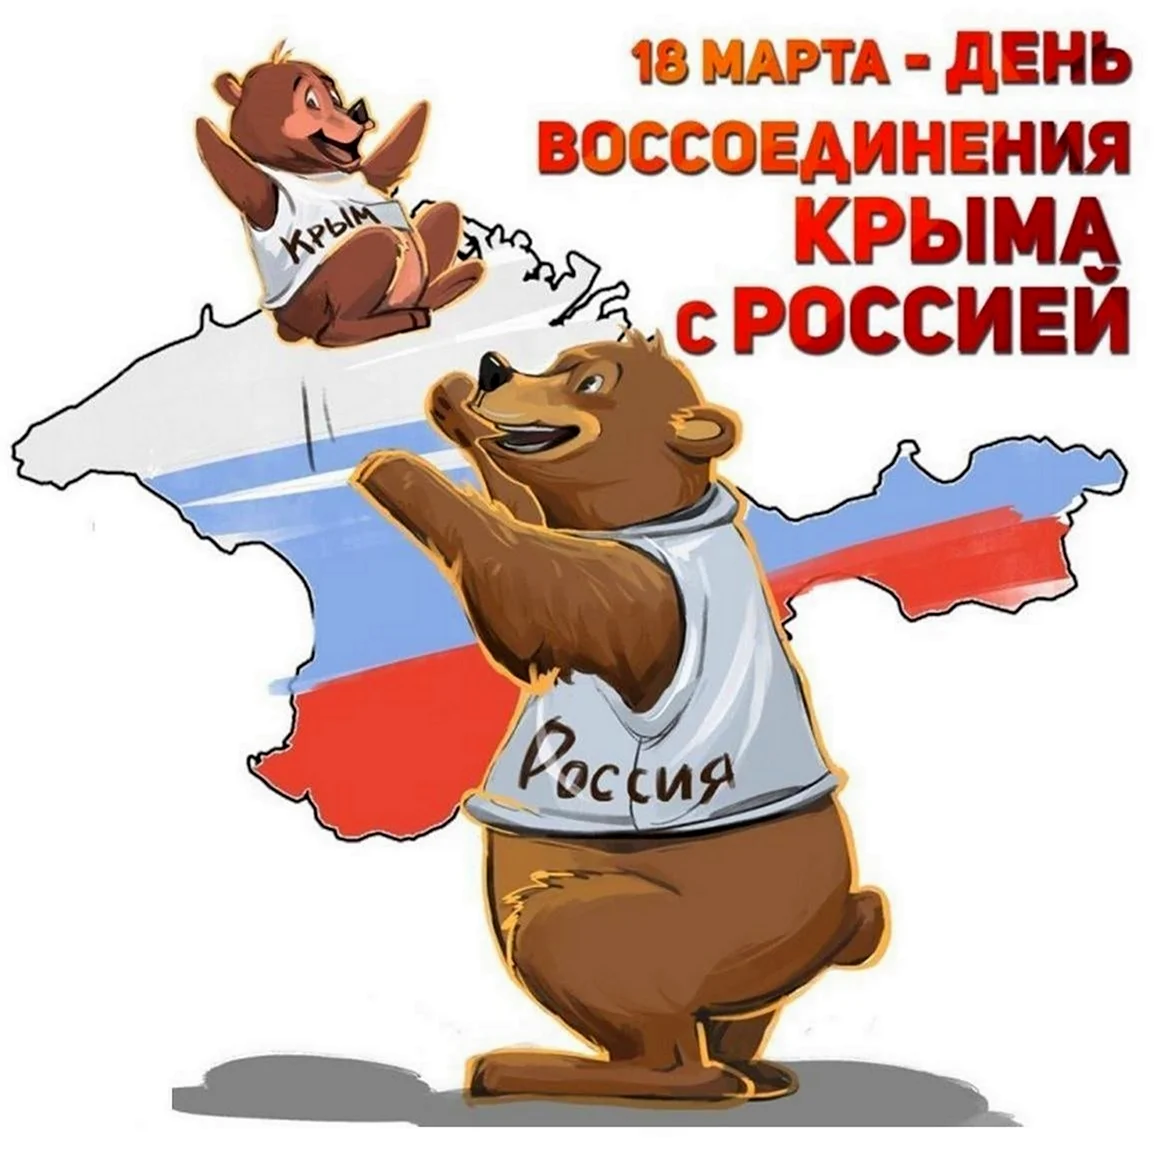 18 Марта день воссоединения Крыма с Россией. Картинка